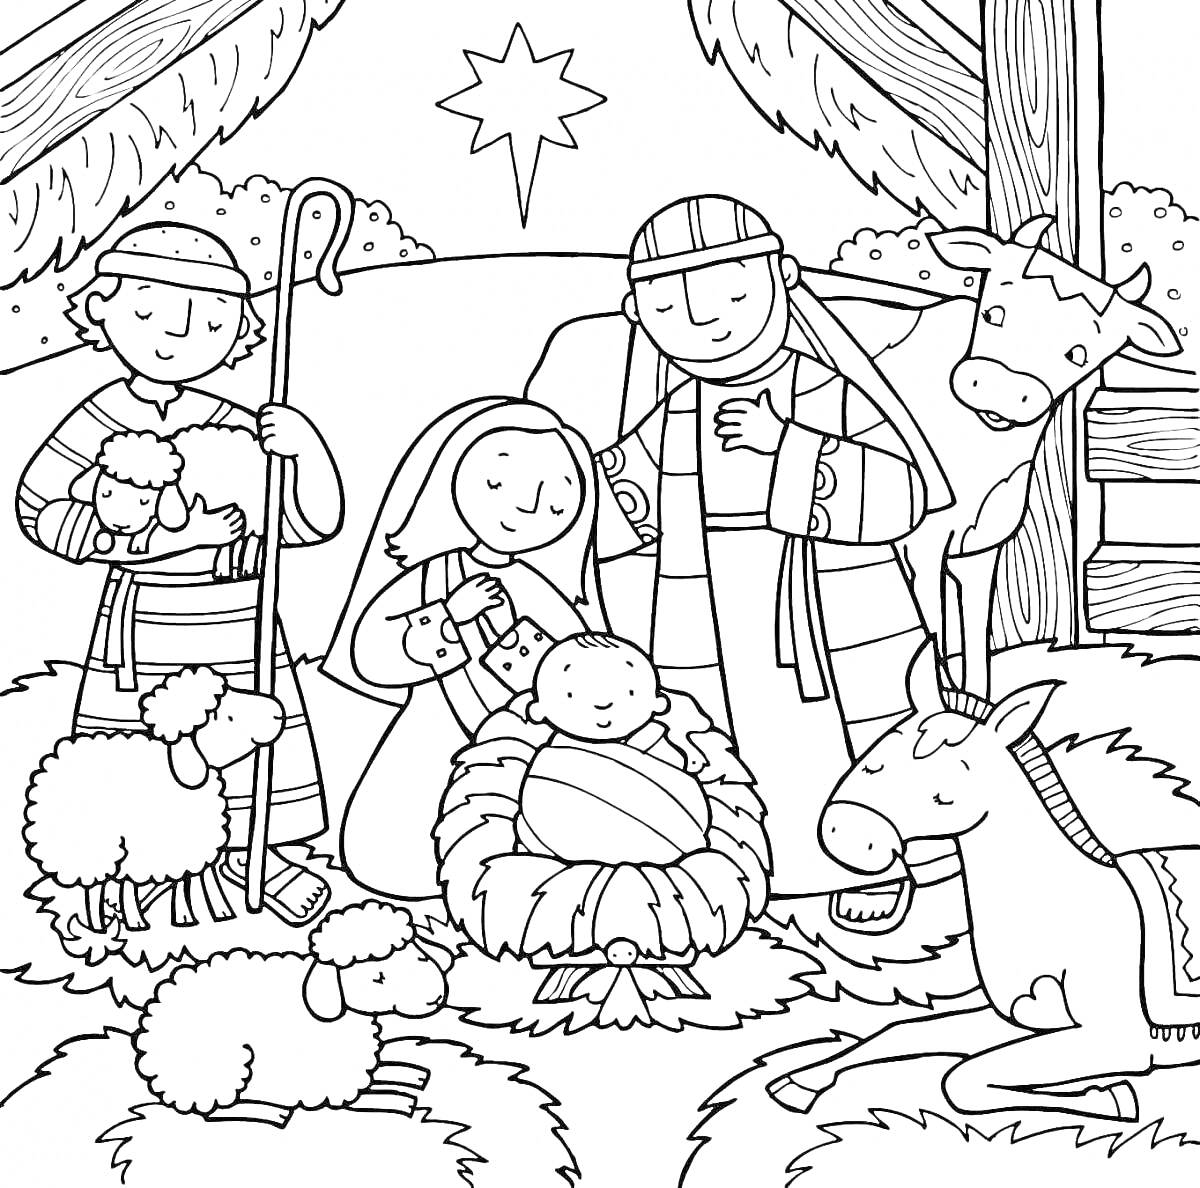 Раскраска Рождественская сцена с младенцем Иисусом, овцами, пастухами и ослом в хлеву